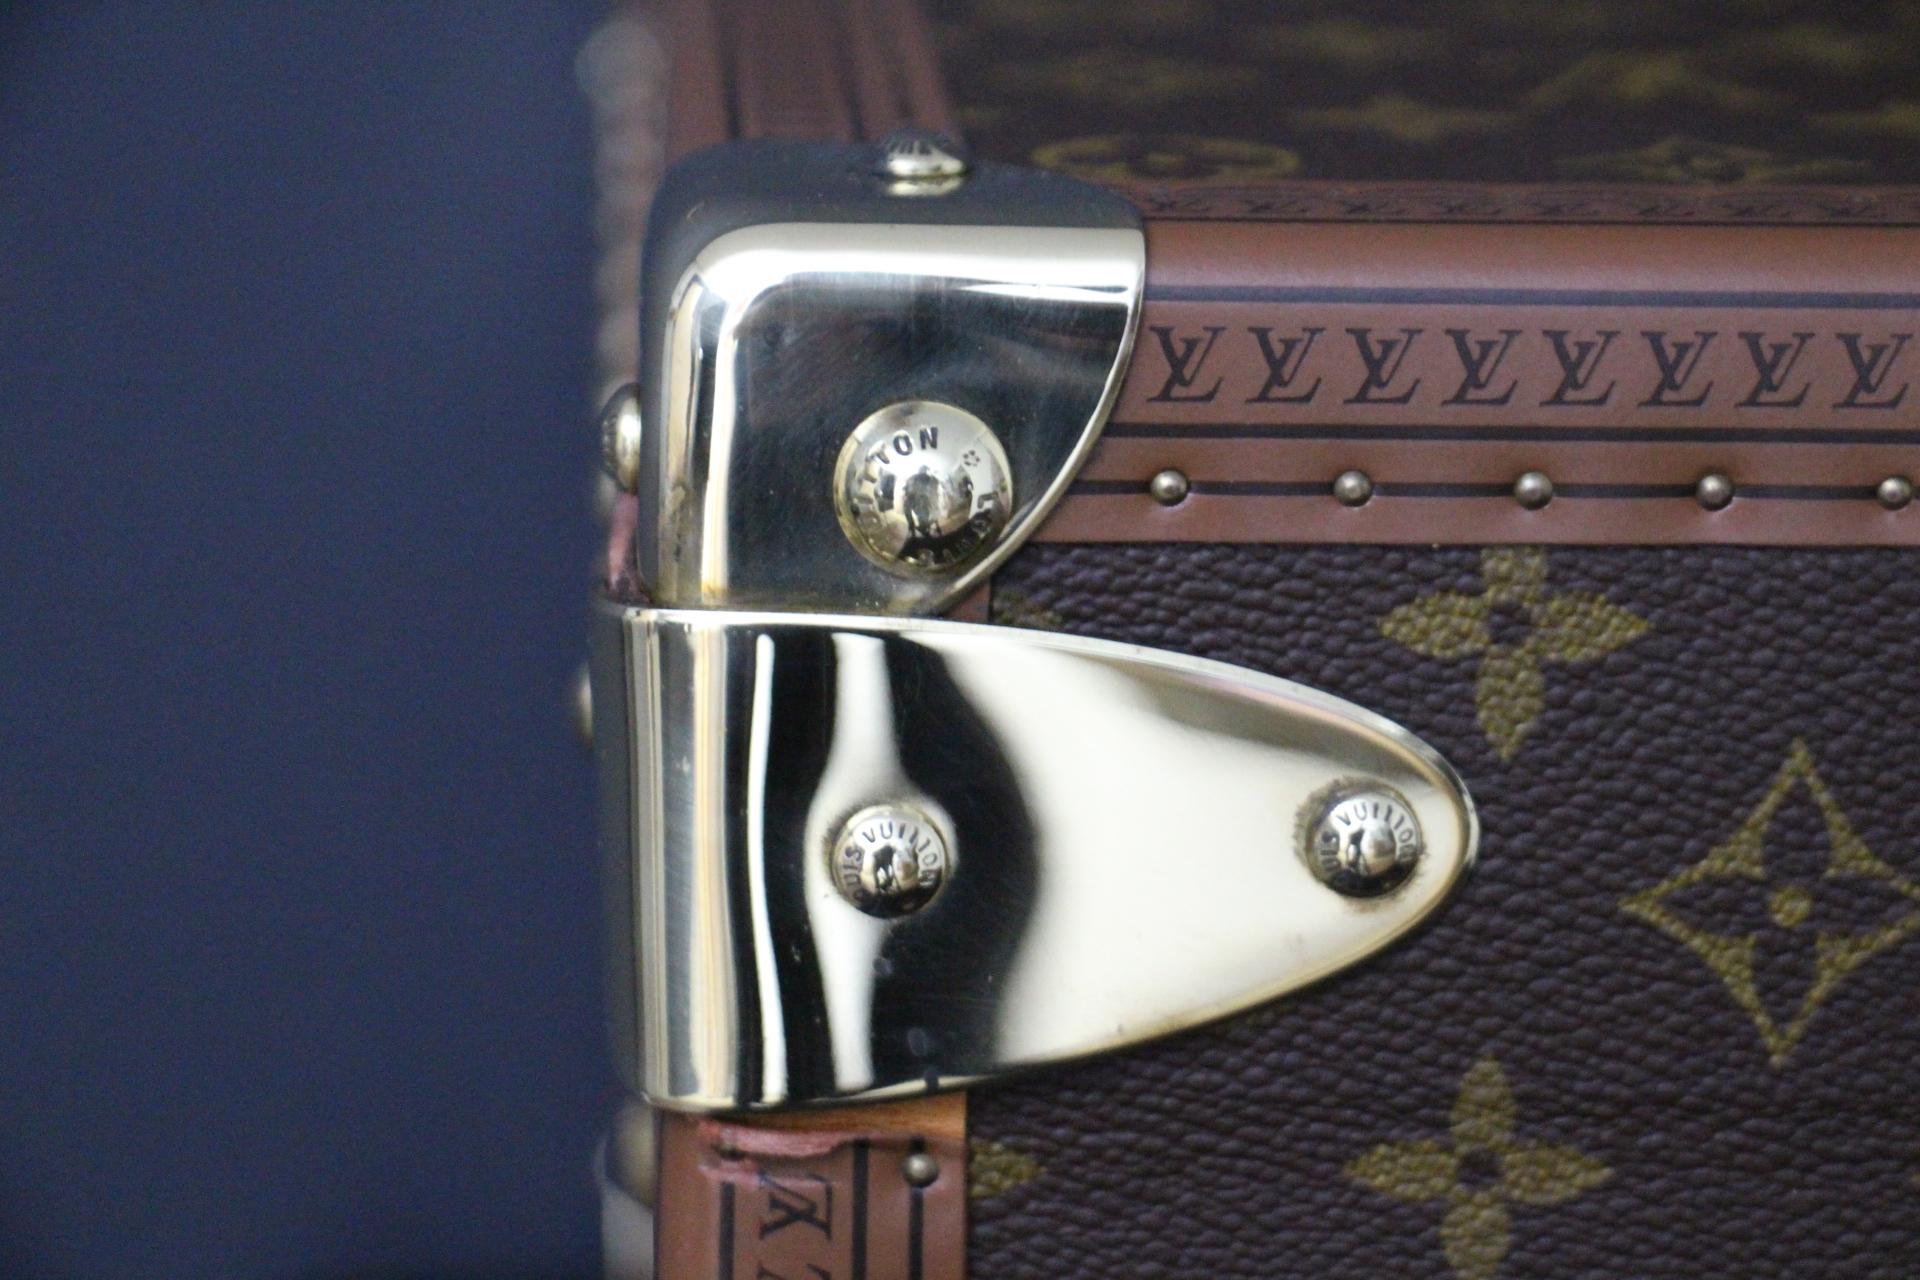  Valise Louis Vuitton, 55 Alzer valise Louis Vuitton, 55 cm 6